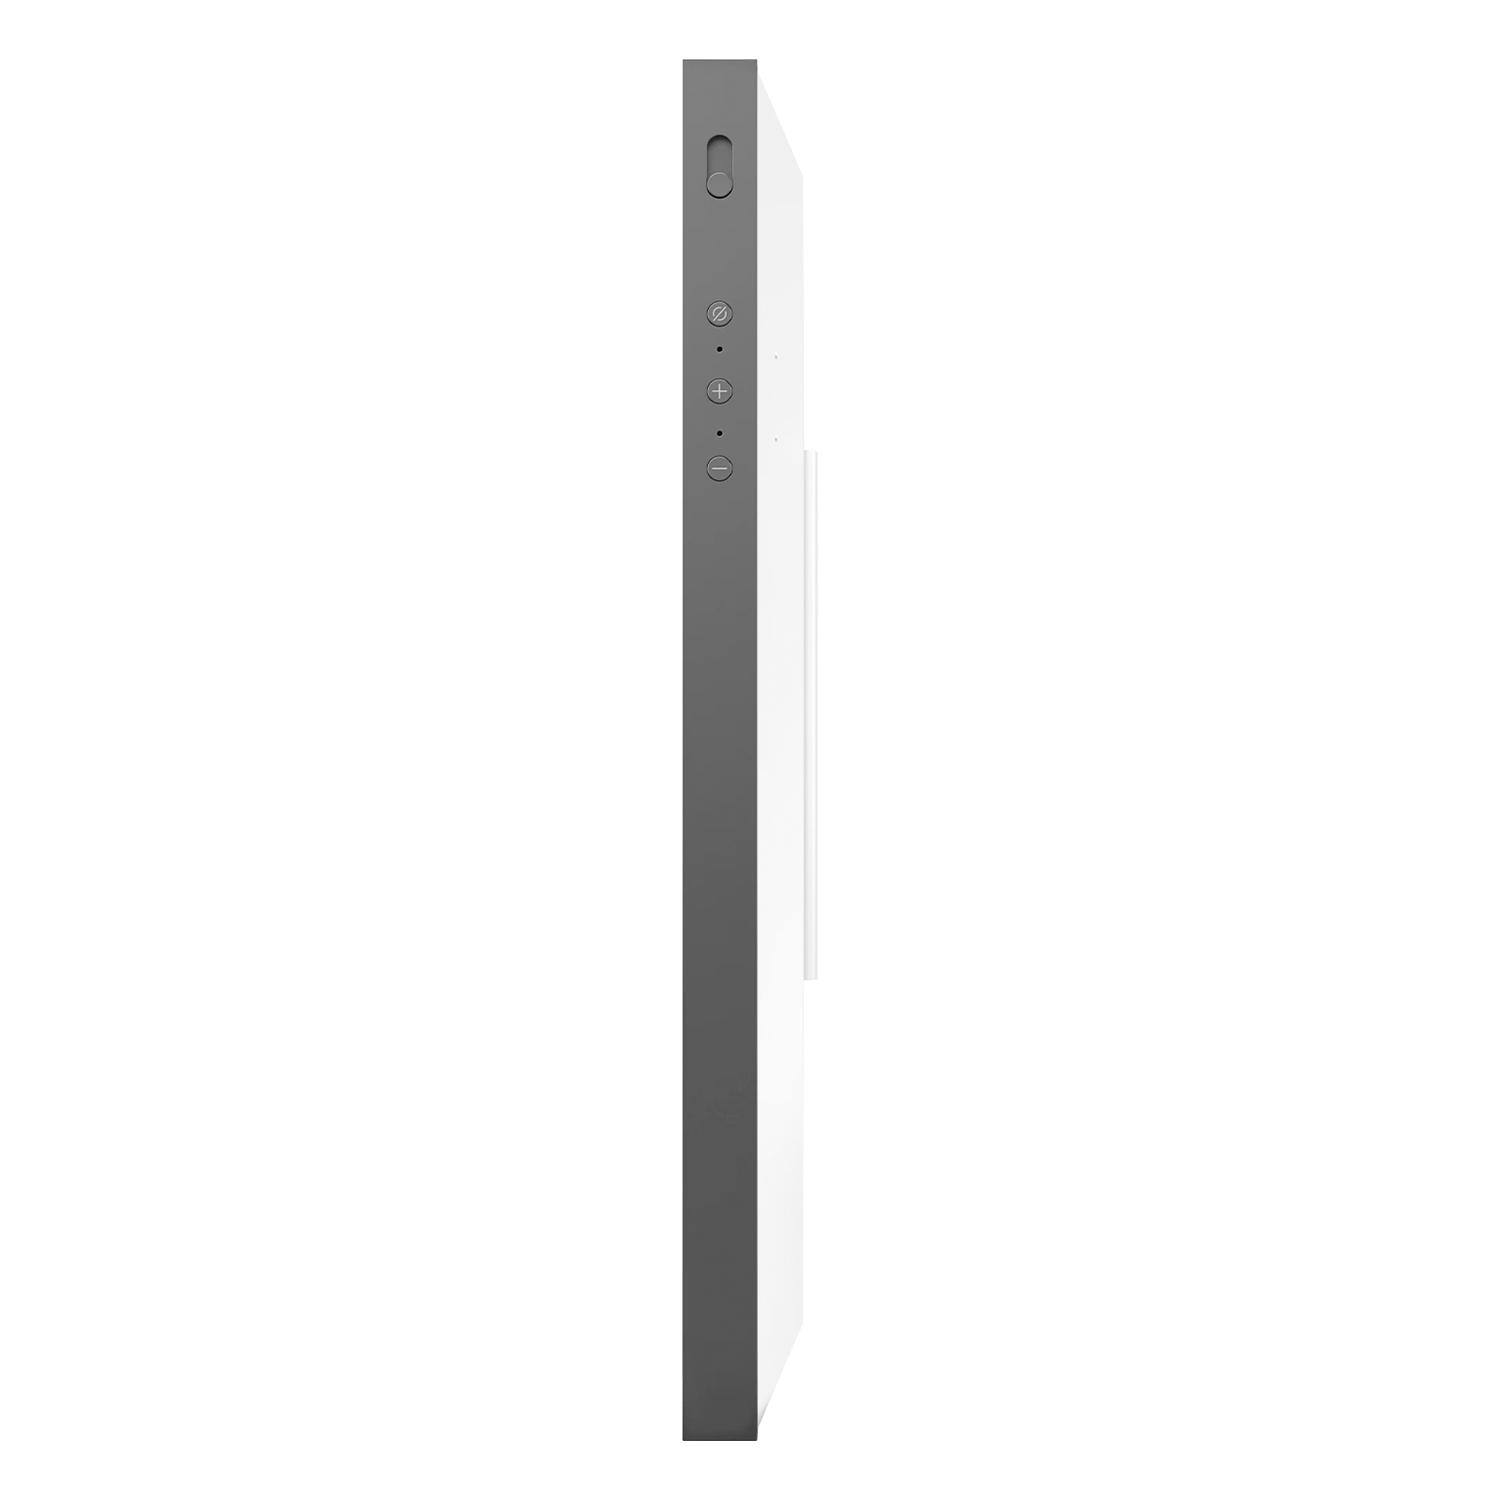 Amazon Echo Show 15 Smart Display 15.6" 5ª Geração Alexa - Branco (Caixa Danidicada)
